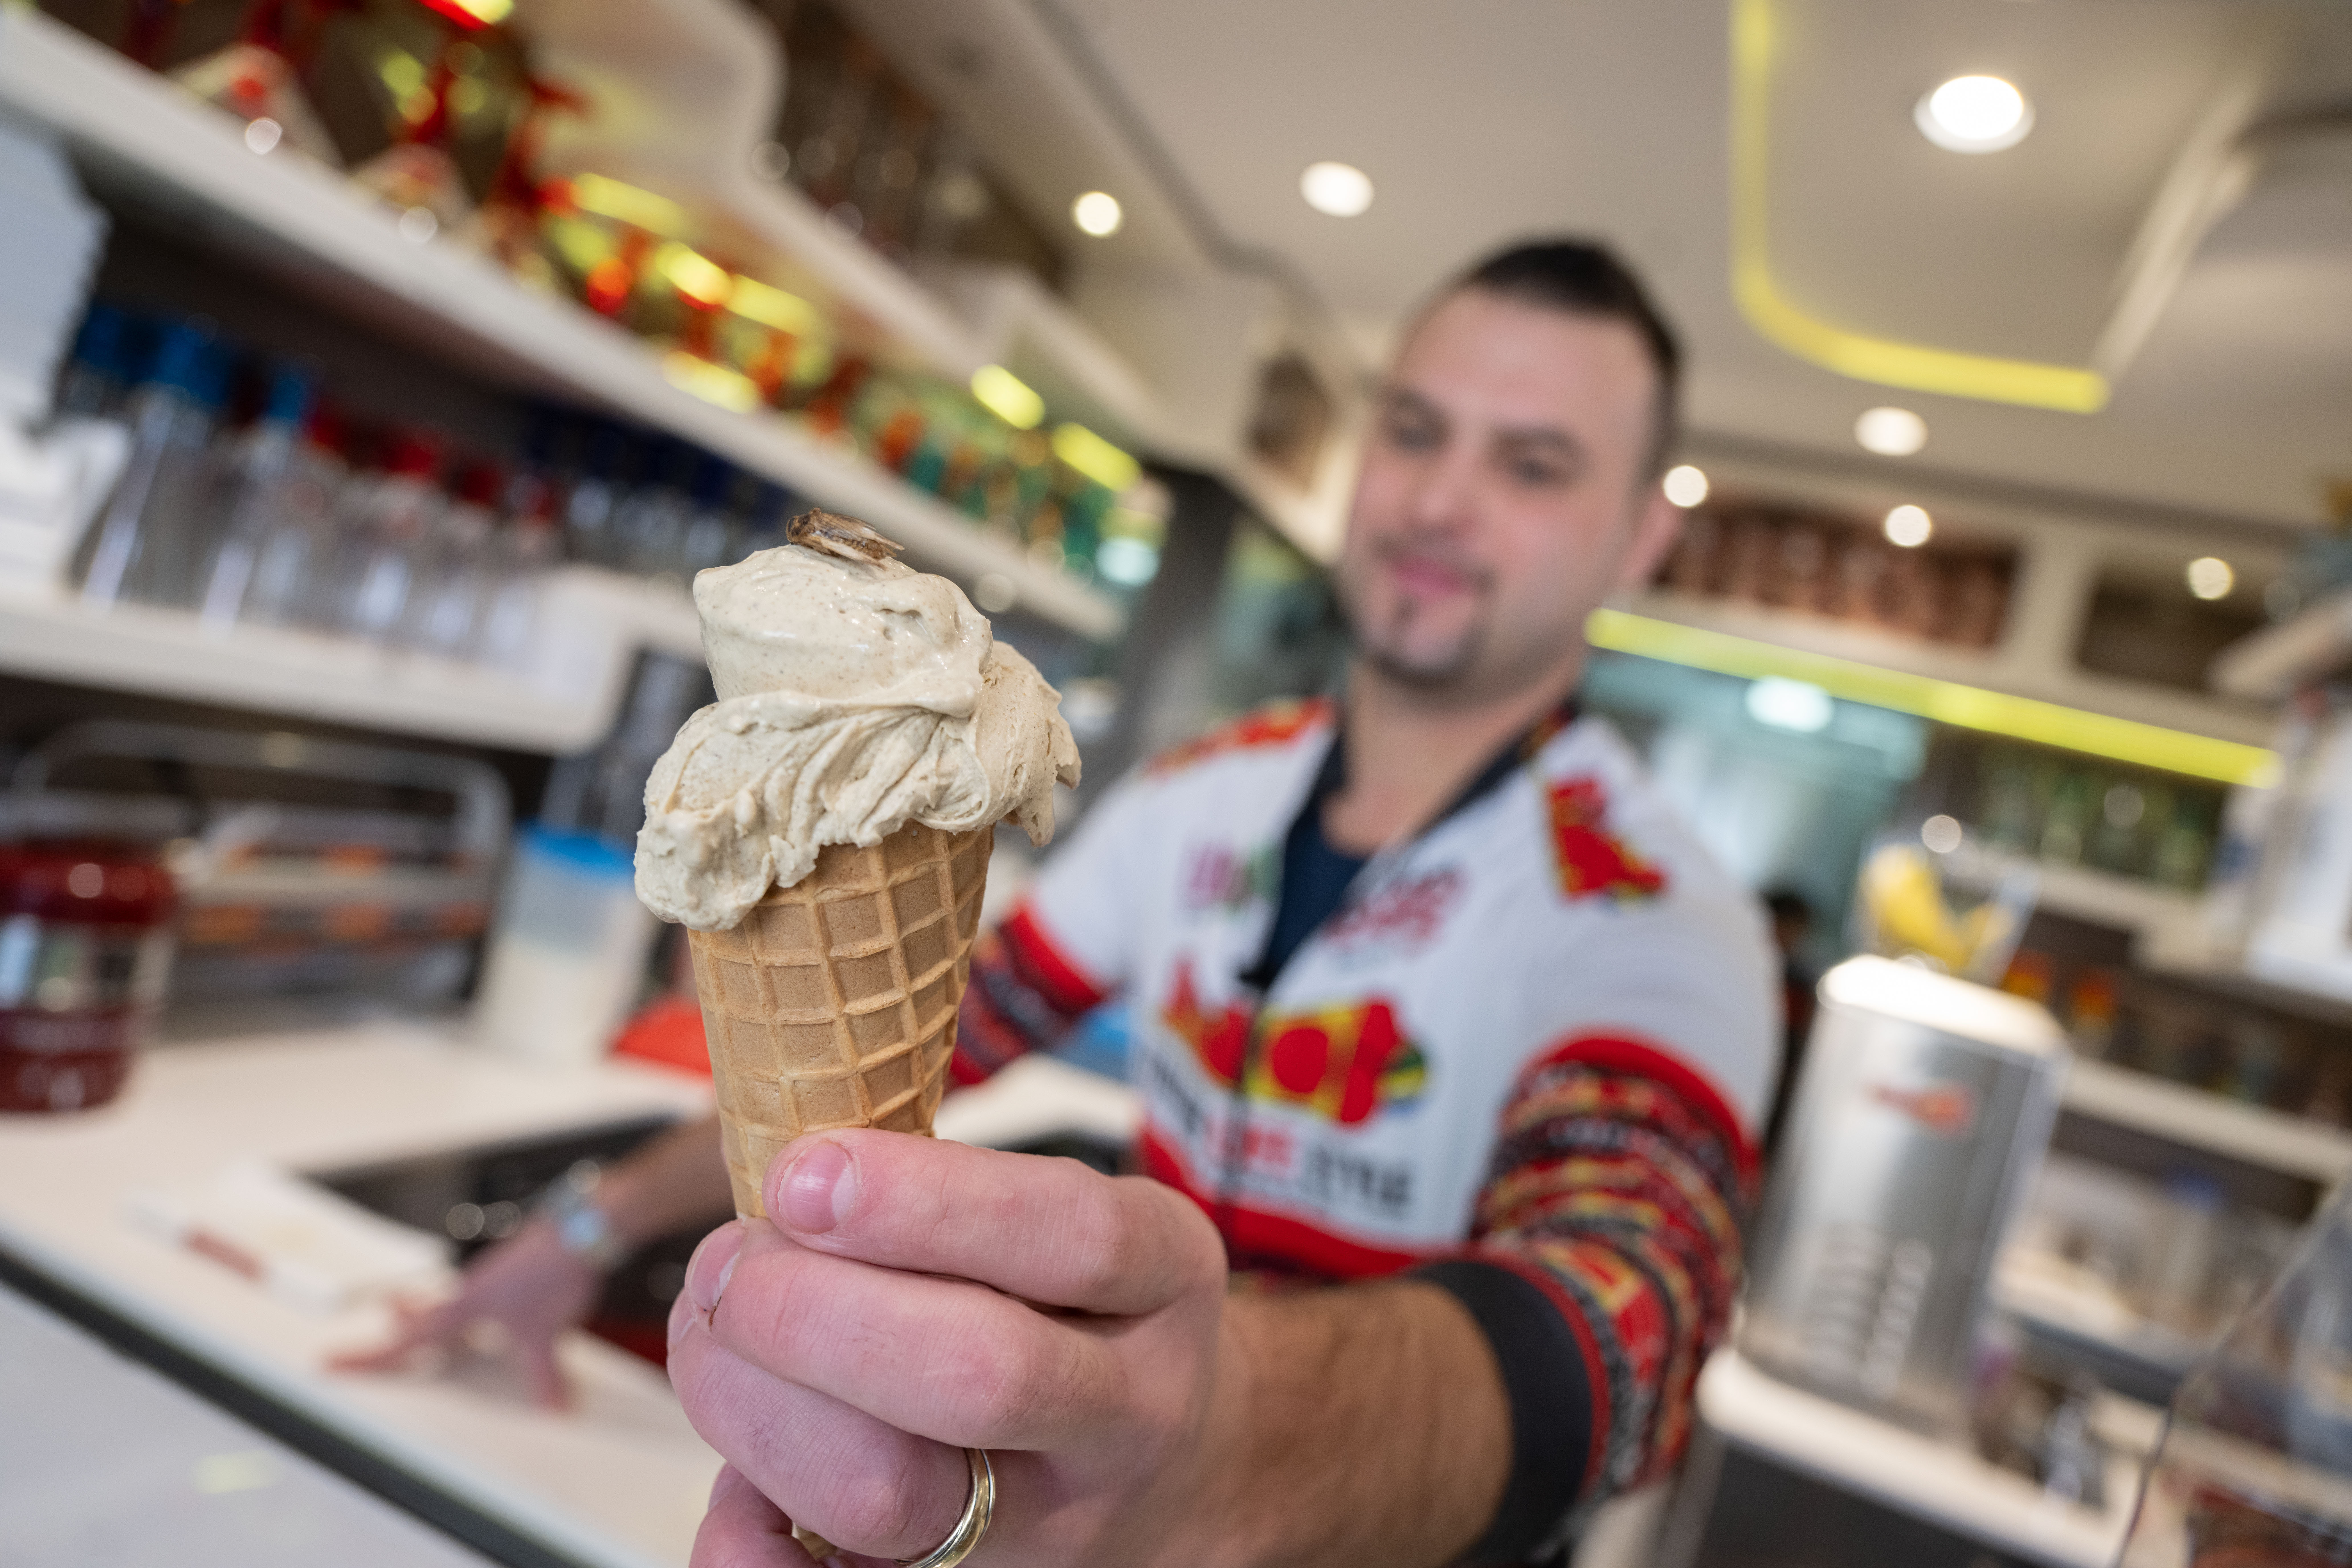 Thomas Micolino, Inhaber des Eiscafé Rino, zeigt ein Eis, das zum Teil aus Grillenmehl besteht und auf dem ein getrocknetes Heimchen sitzt